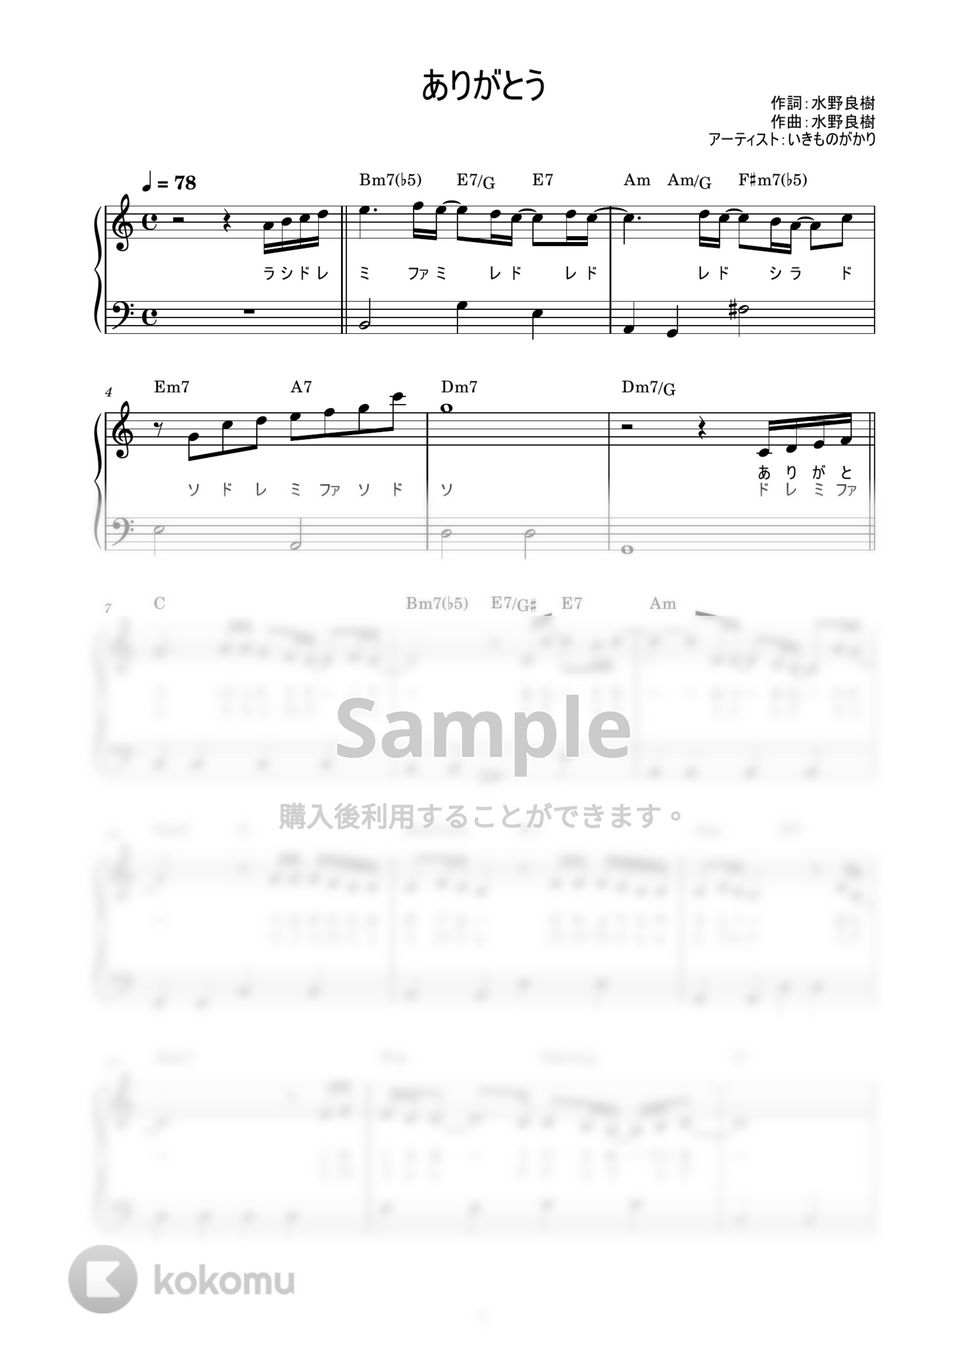 いきものがかり - ありがとう (かんたん / 歌詞付き / ドレミ付き / 初心者) by piano.tokyo